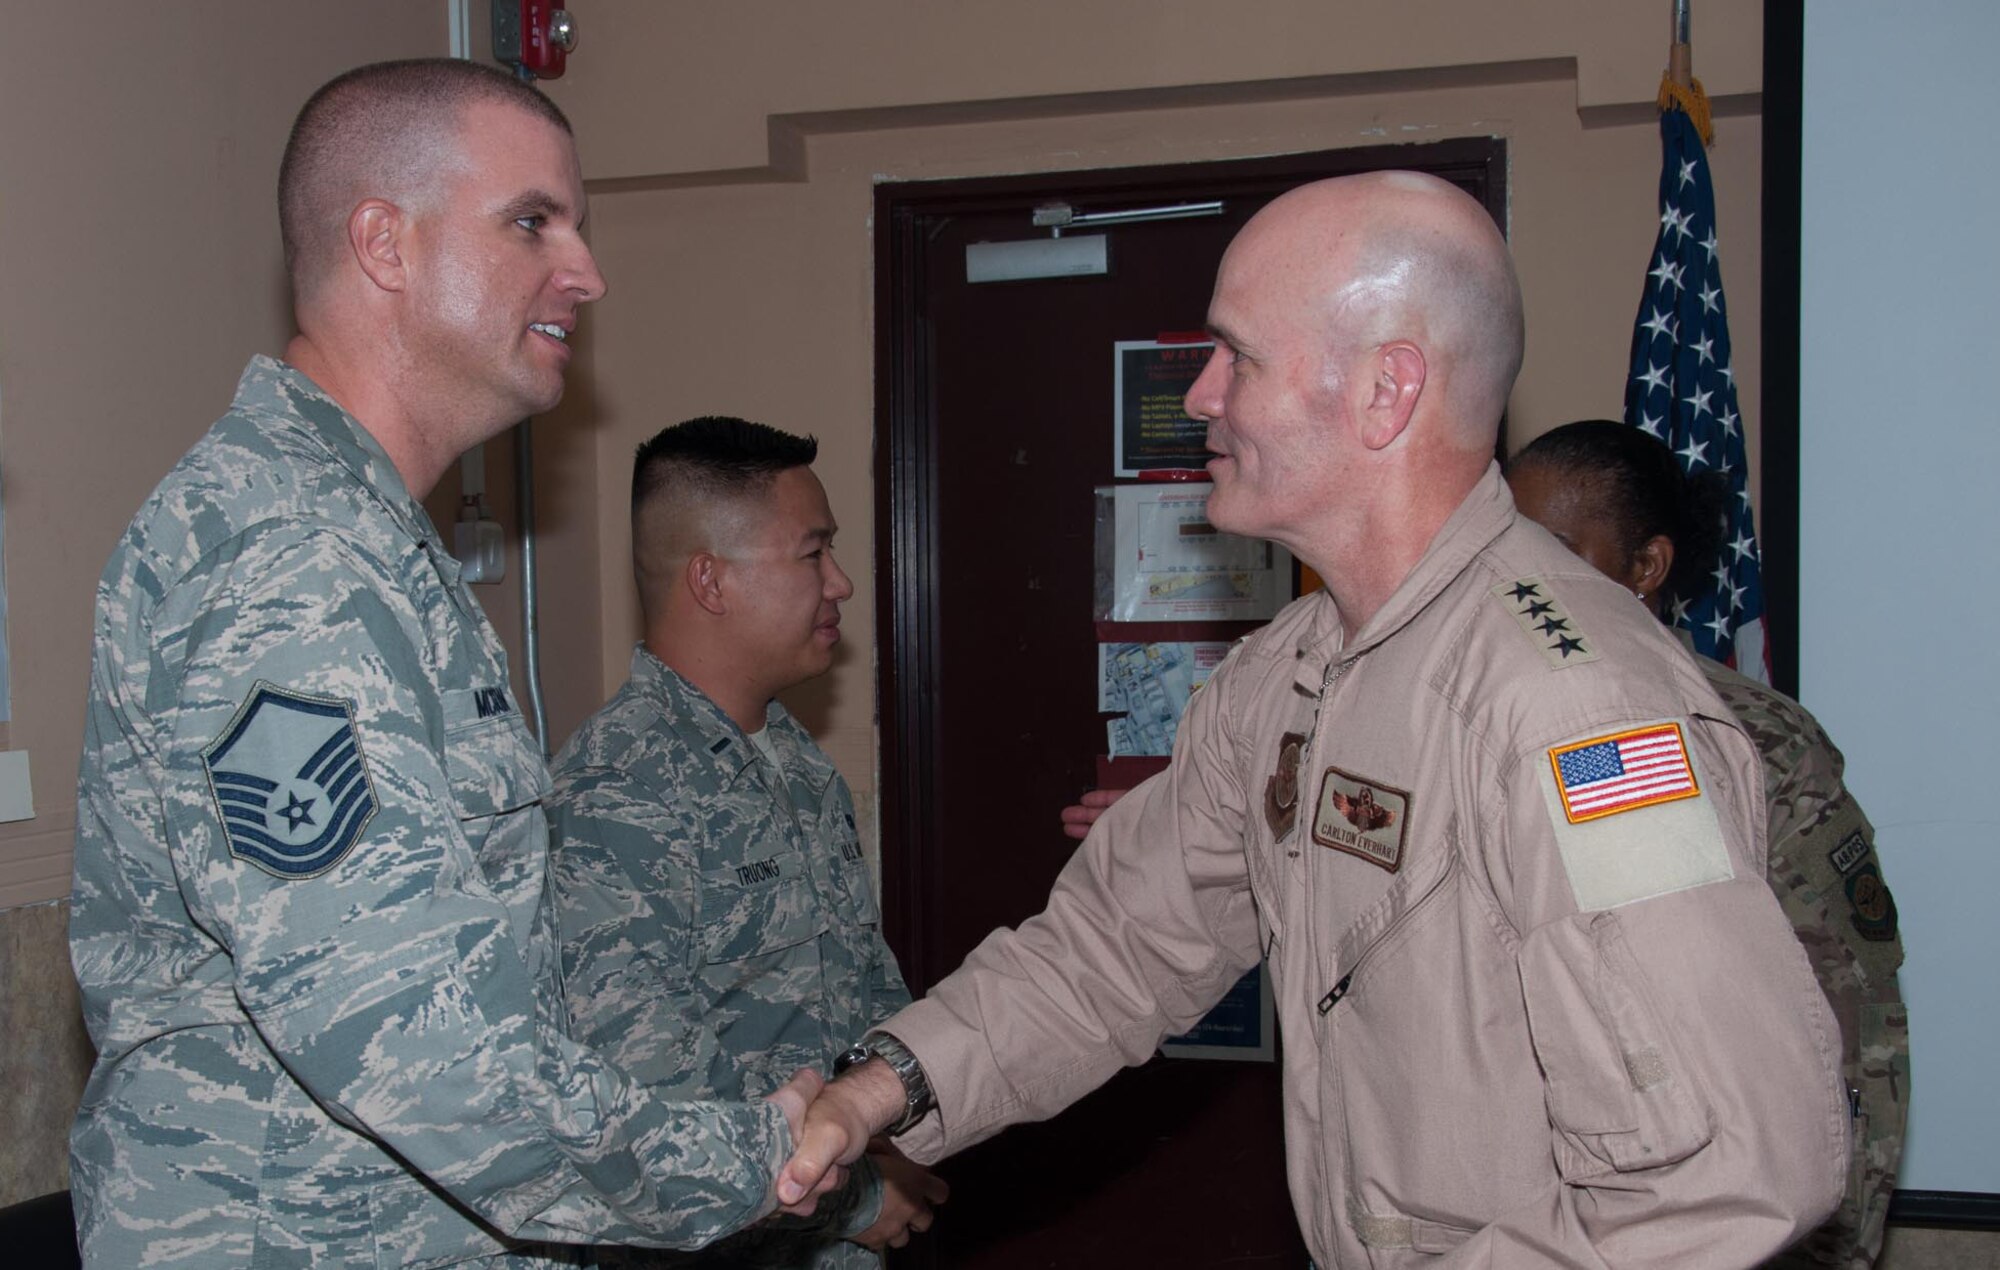 Airman shaking hands with Gen. Everhart